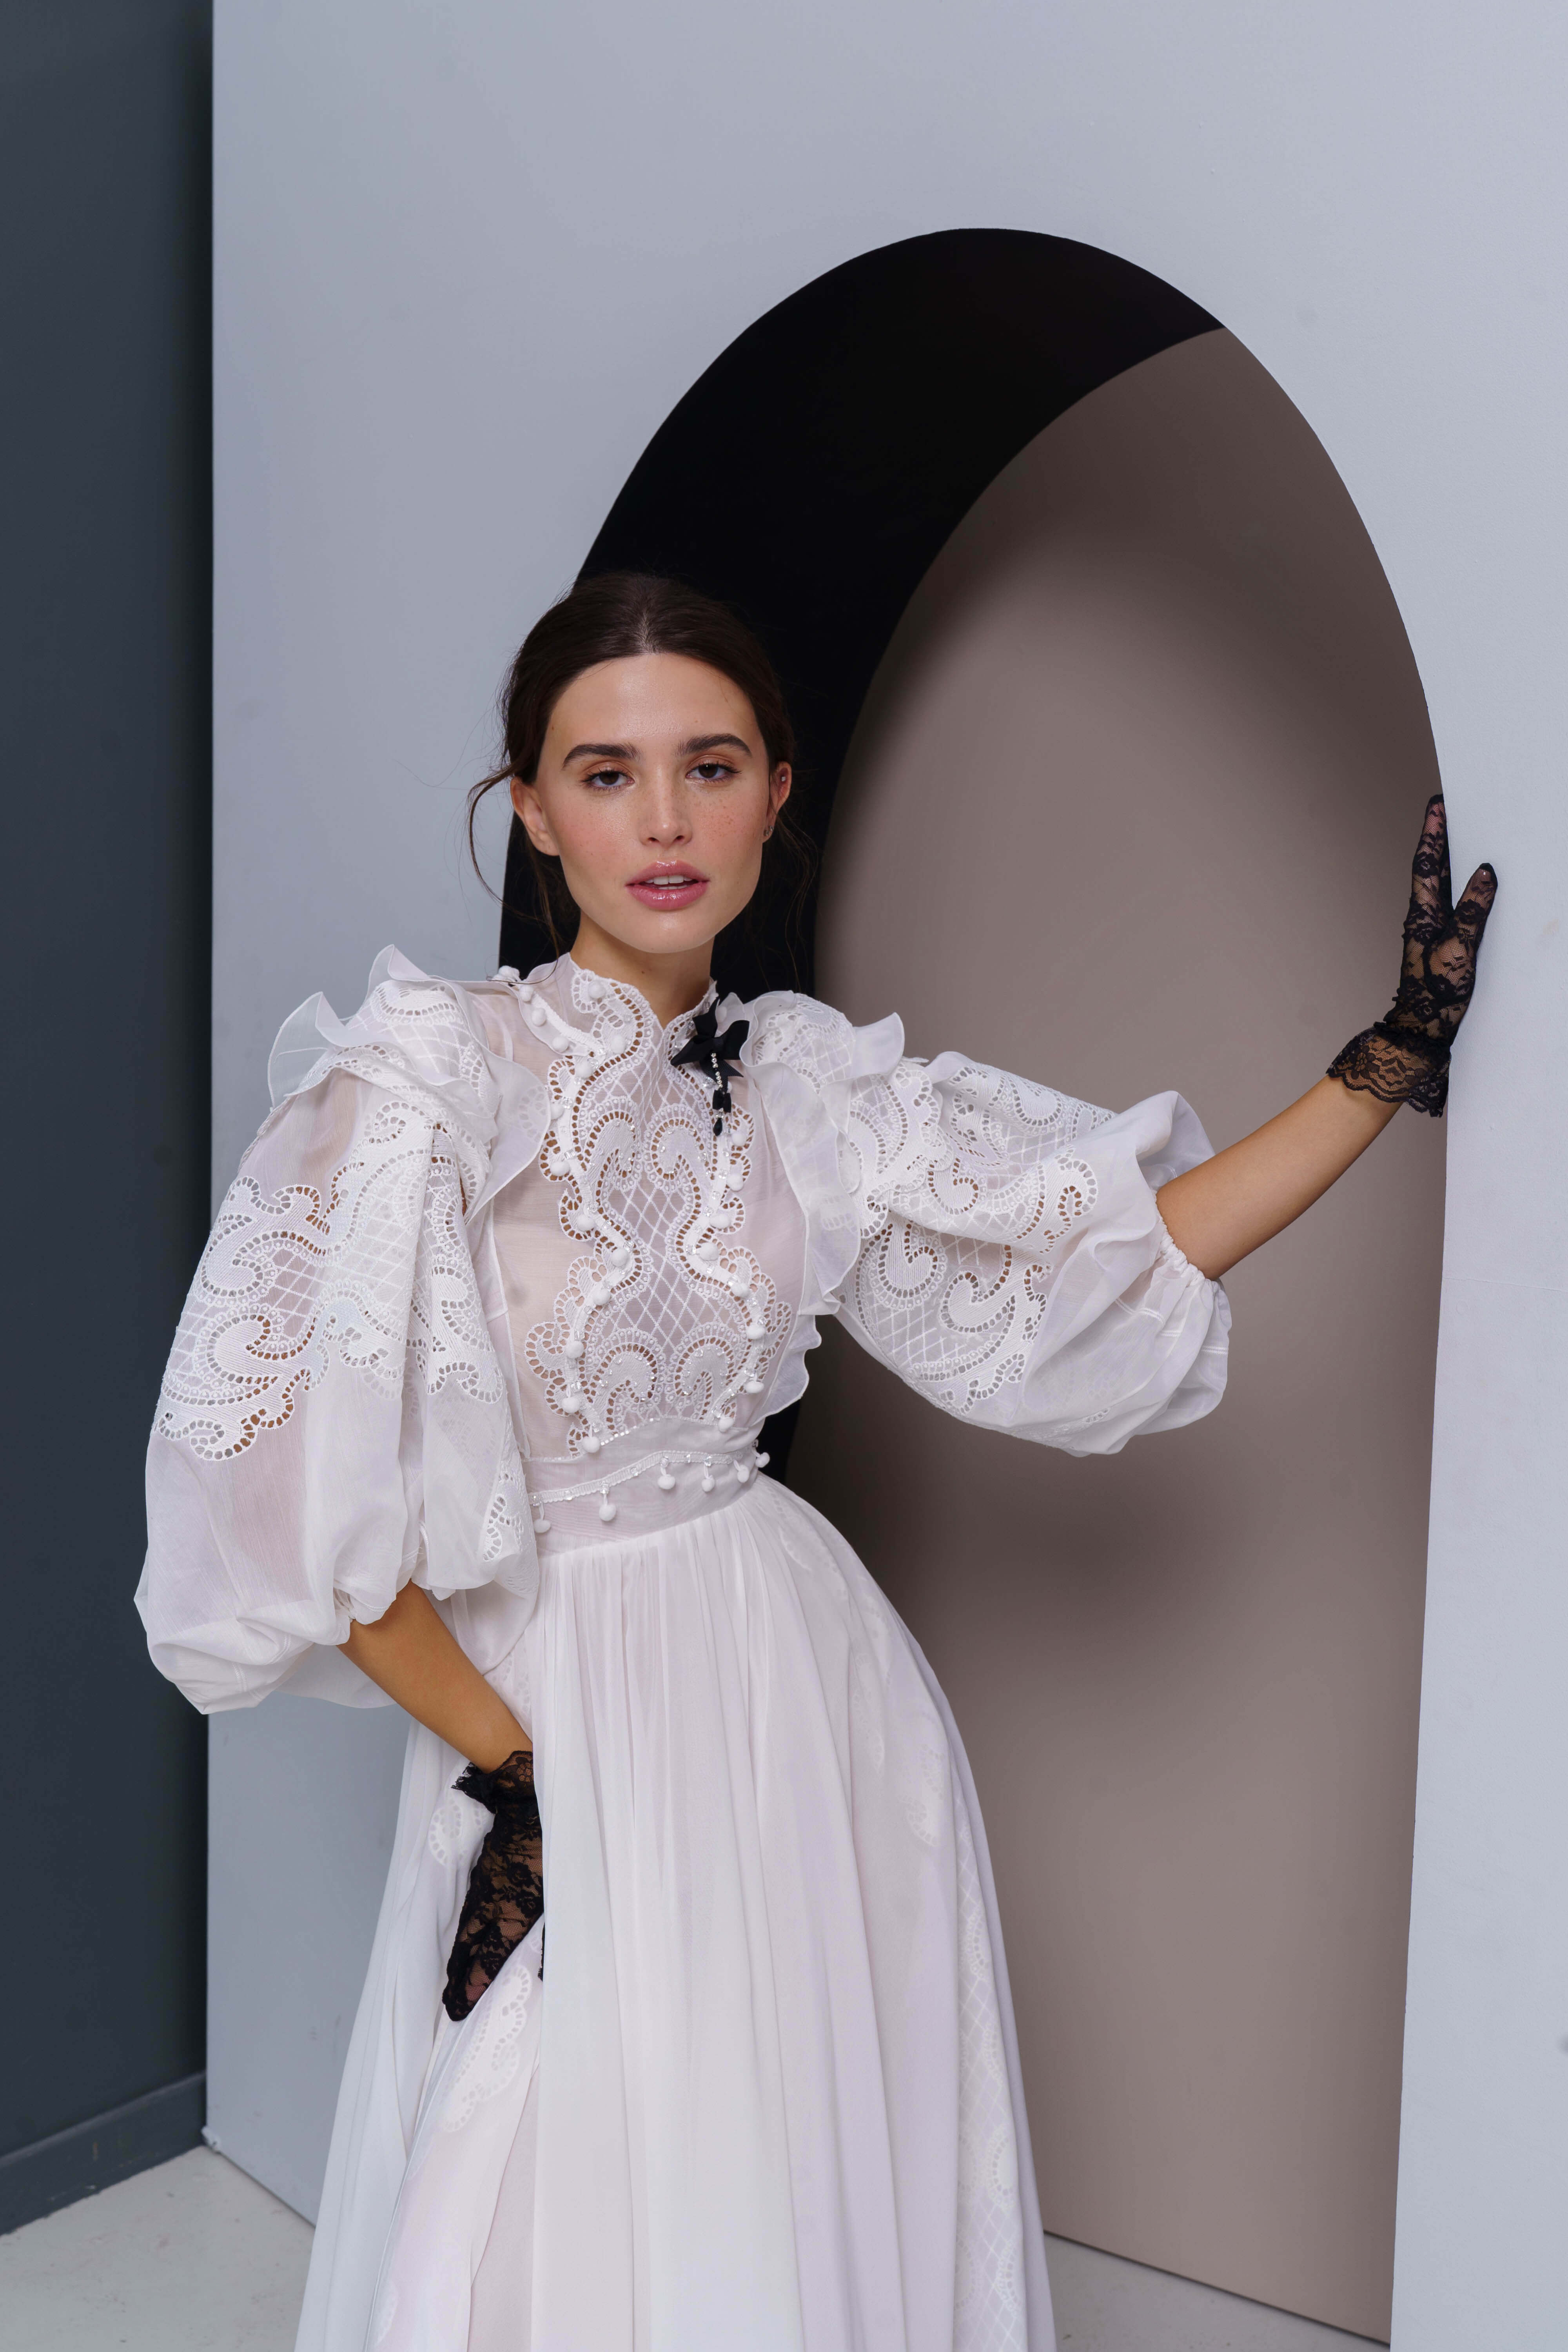 Купить свадебное платье «Вироса+Ларус» Рара Авис из коллекции Аморе Мио 2022 года в салоне «Мэри Трюфель»